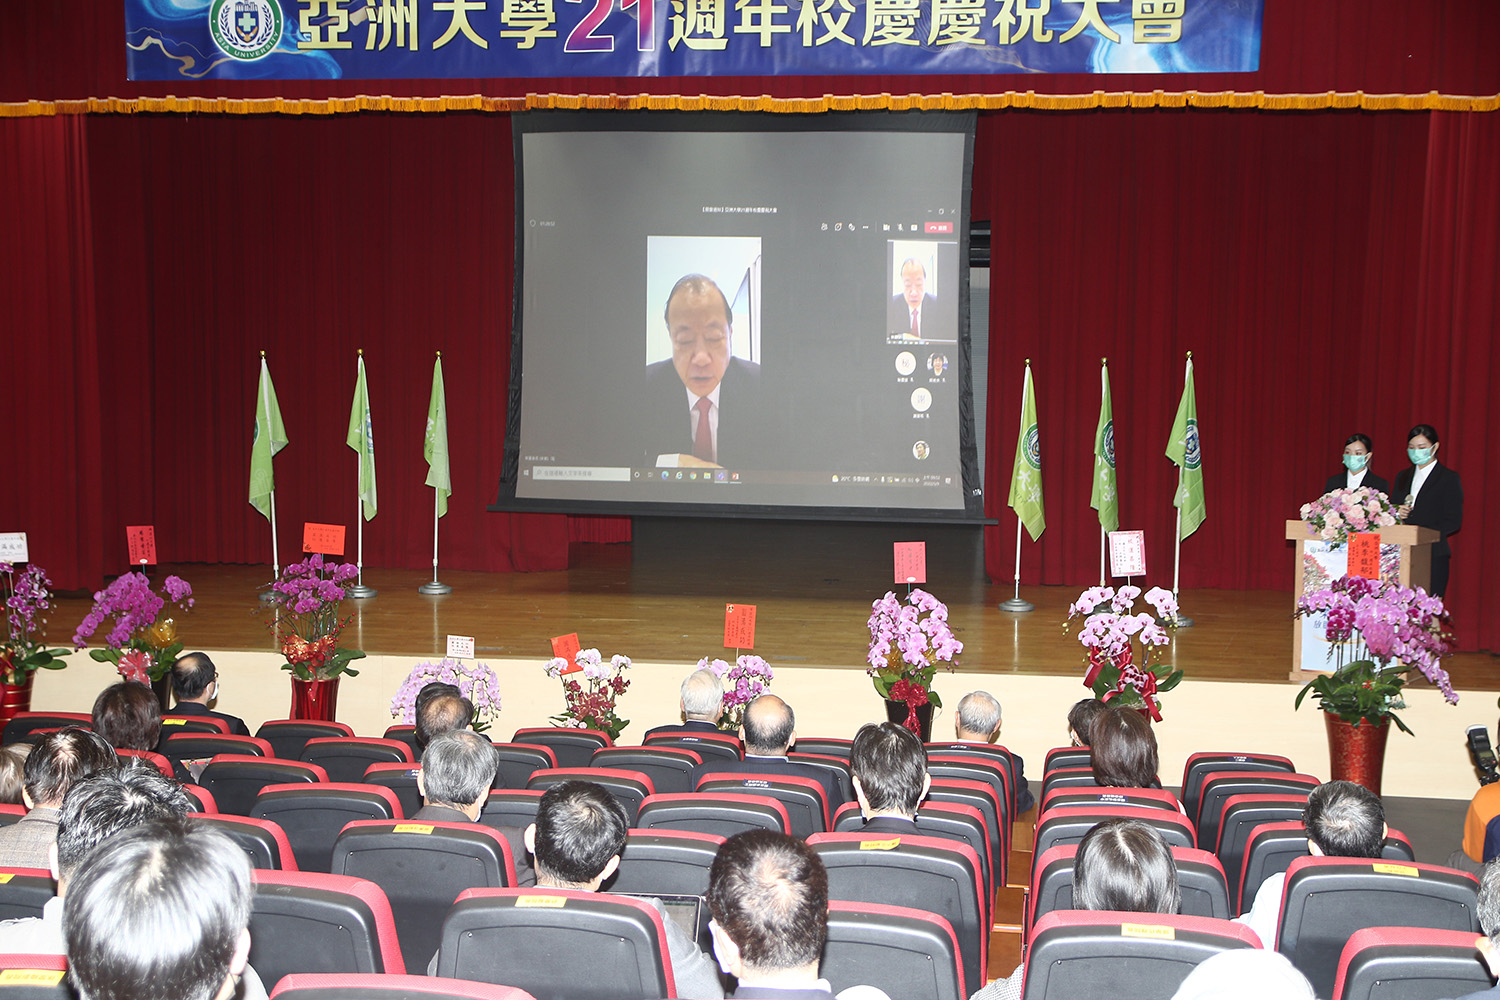 亞洲大學昨天21周年校慶，創辦人蔡長海透過視訊致詞指出，要繼續努力讓亞大在世界嶄露頭角，發光發亮